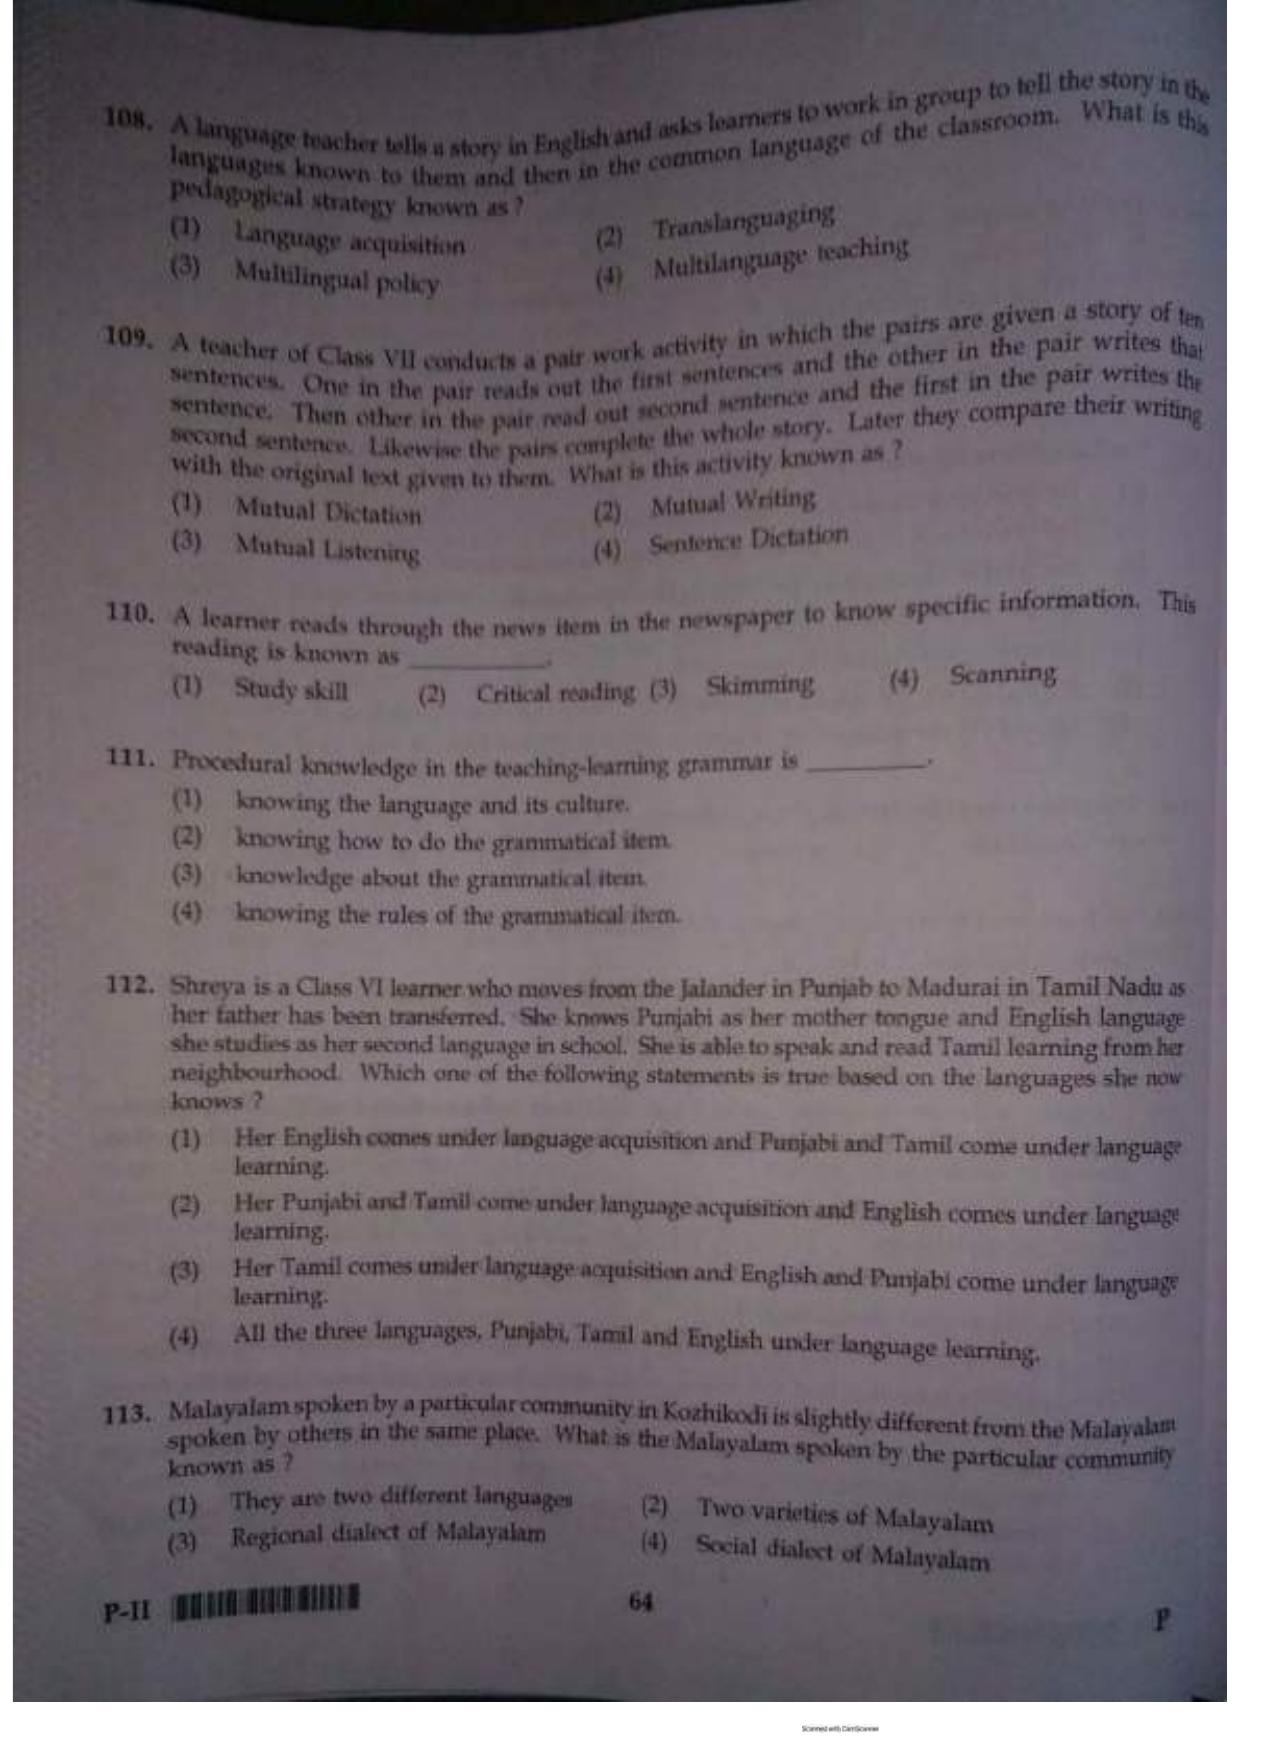 ctet paper 2 question paper SET P - Page 63